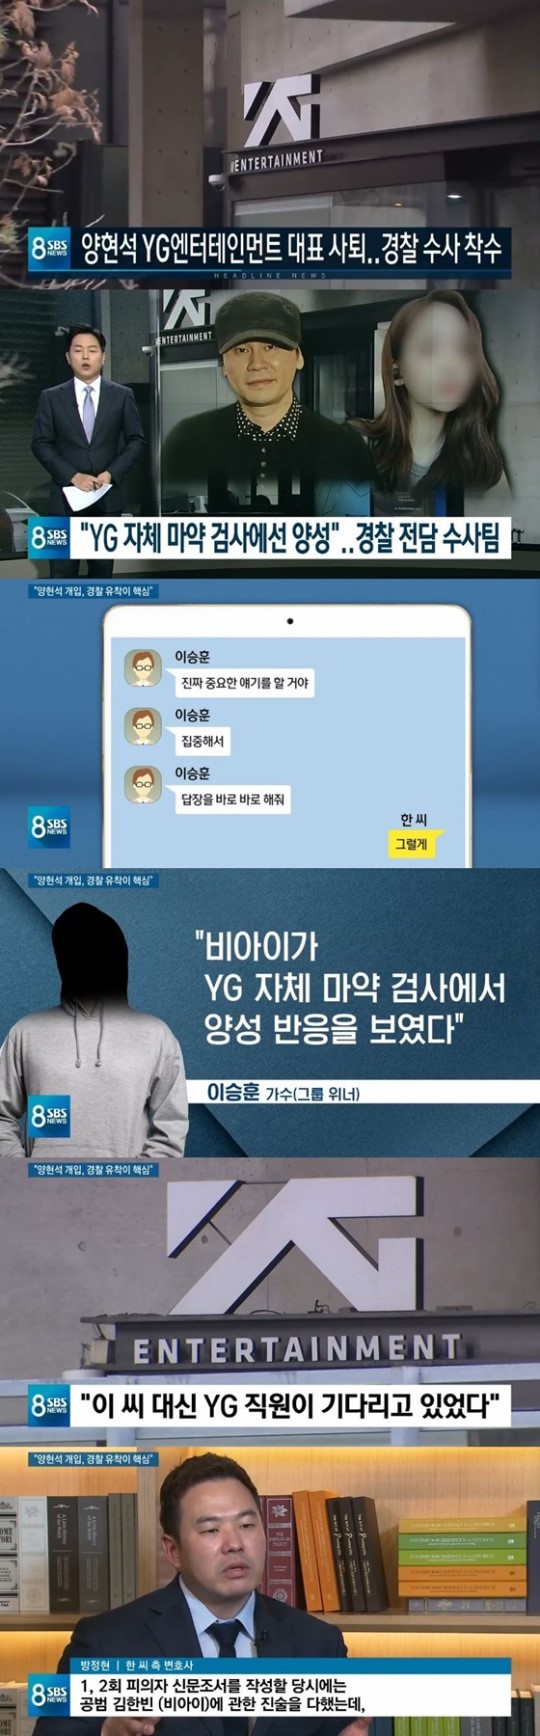 '8뉴스' 양현석, "비아이 마약 의혹 덮으려 경찰조사 개입" 